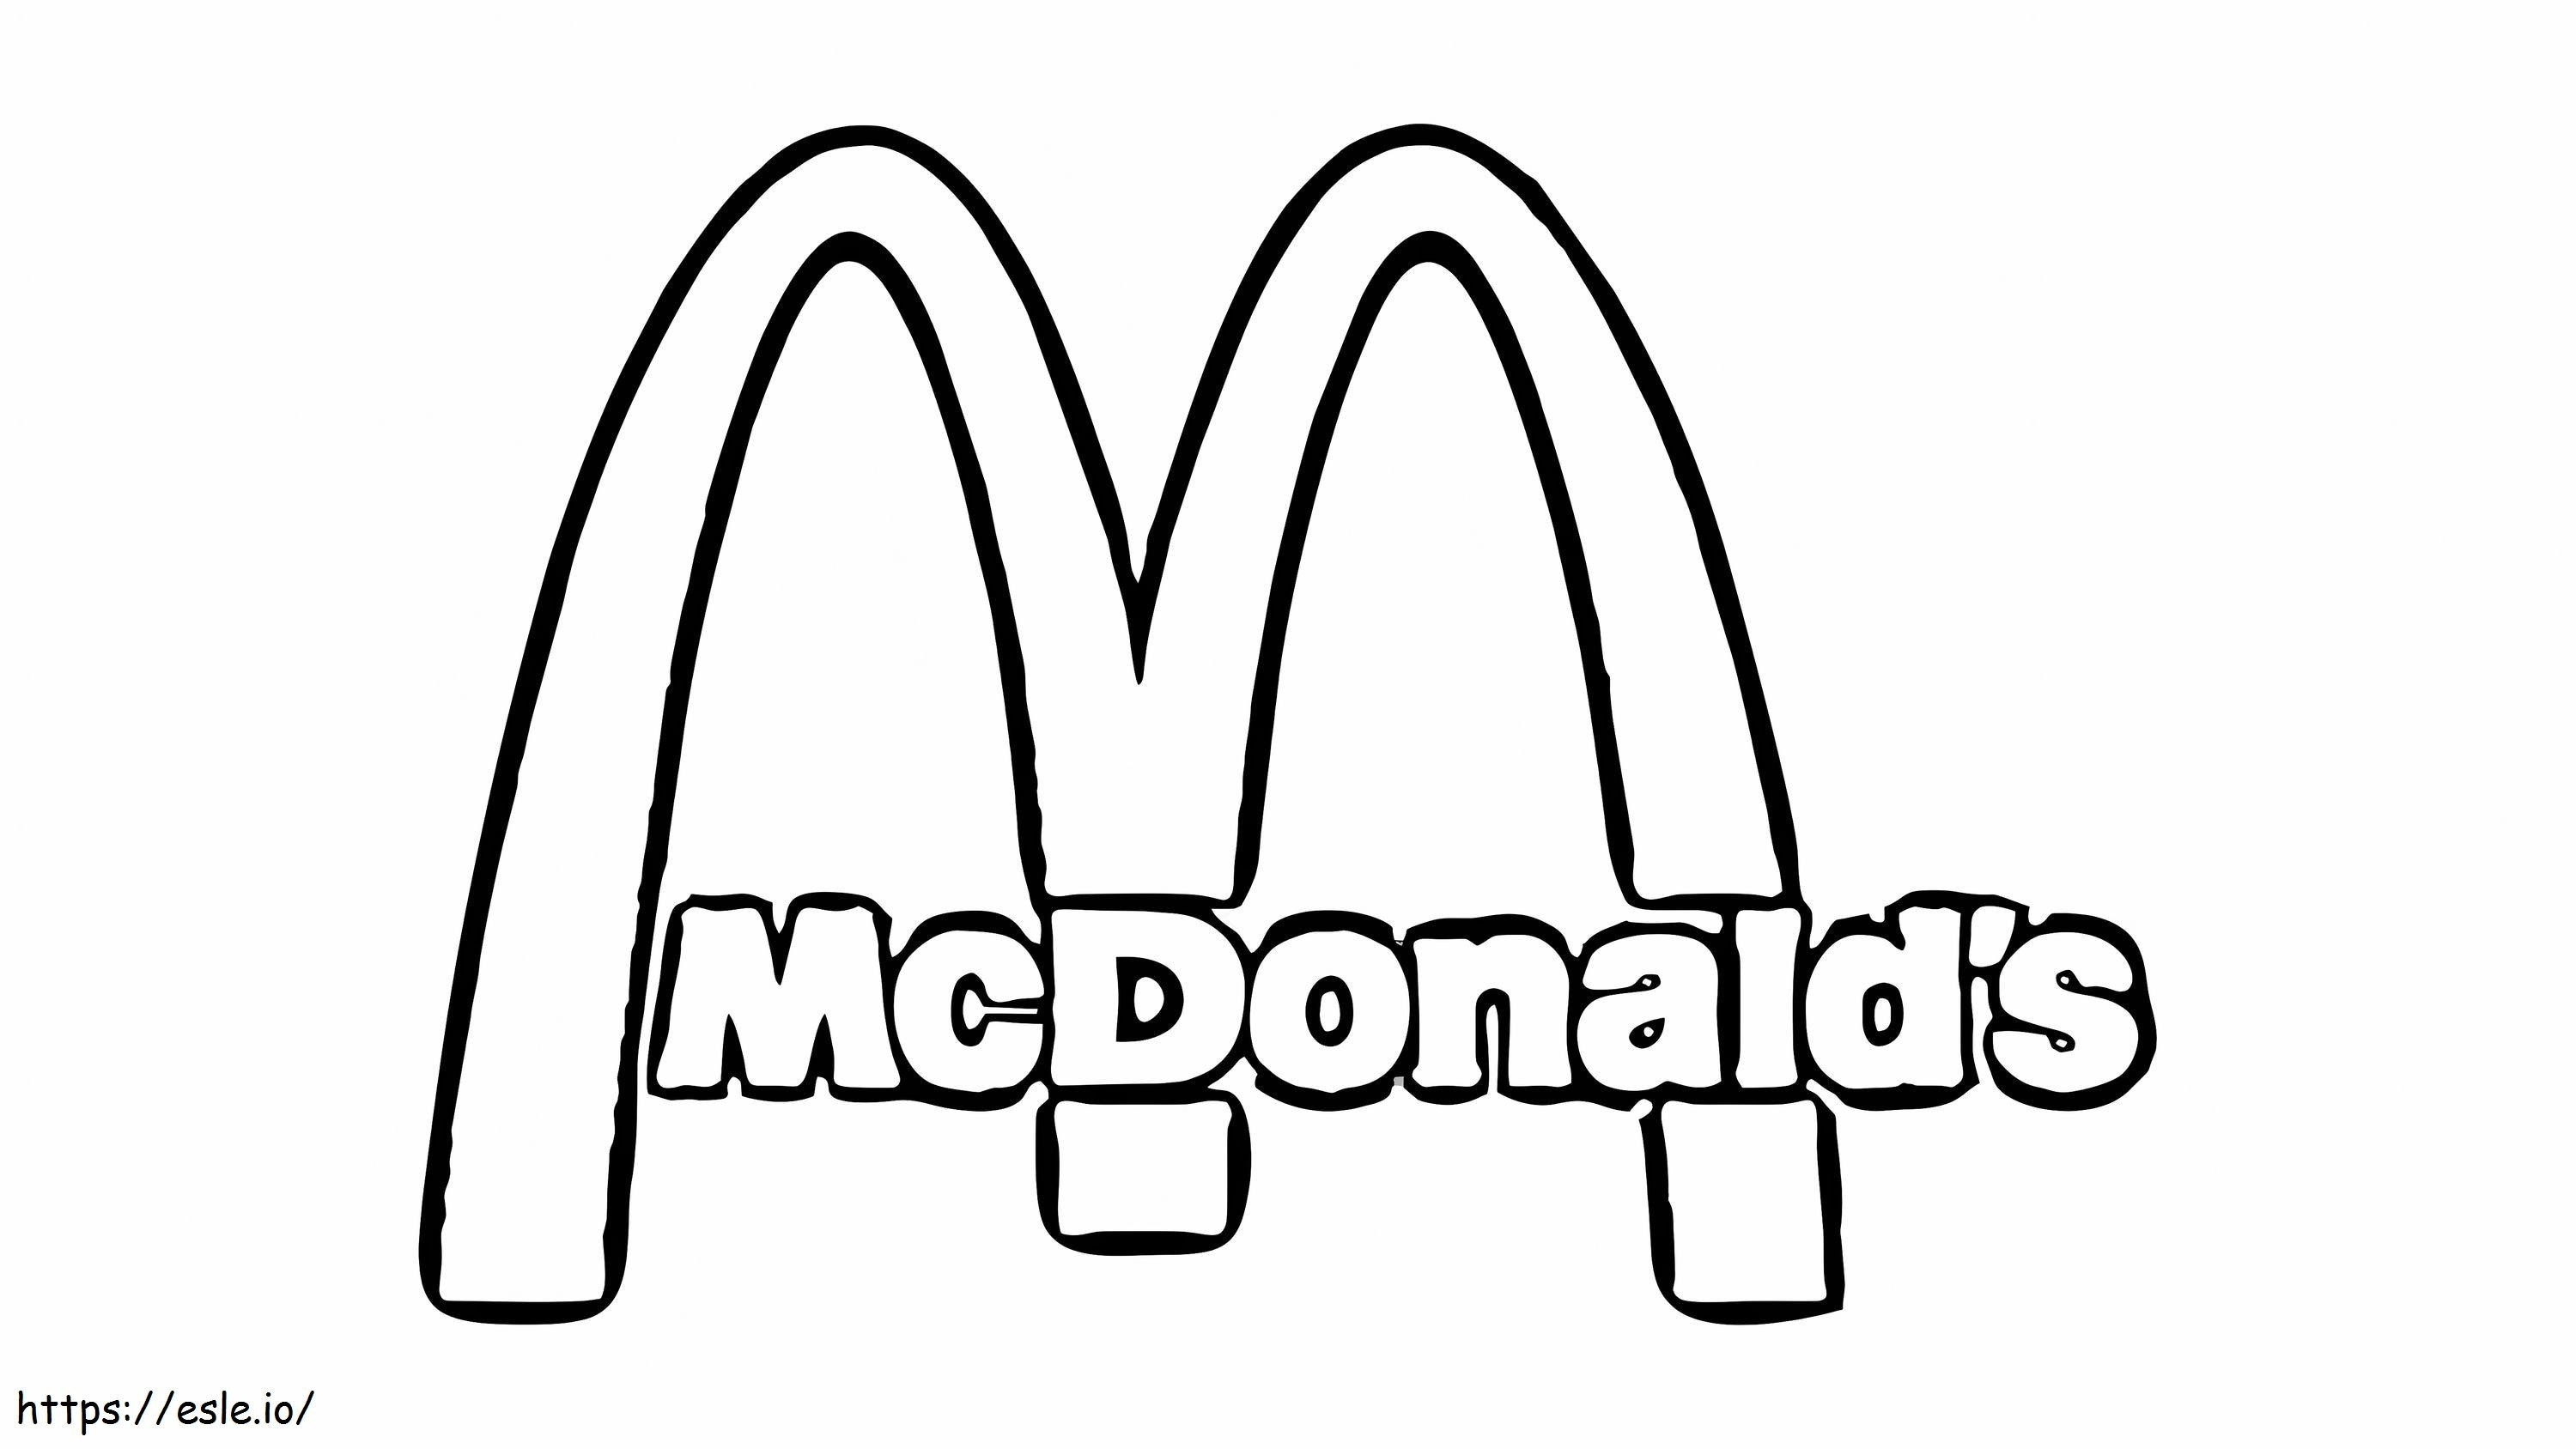 McDonald logosu boyama